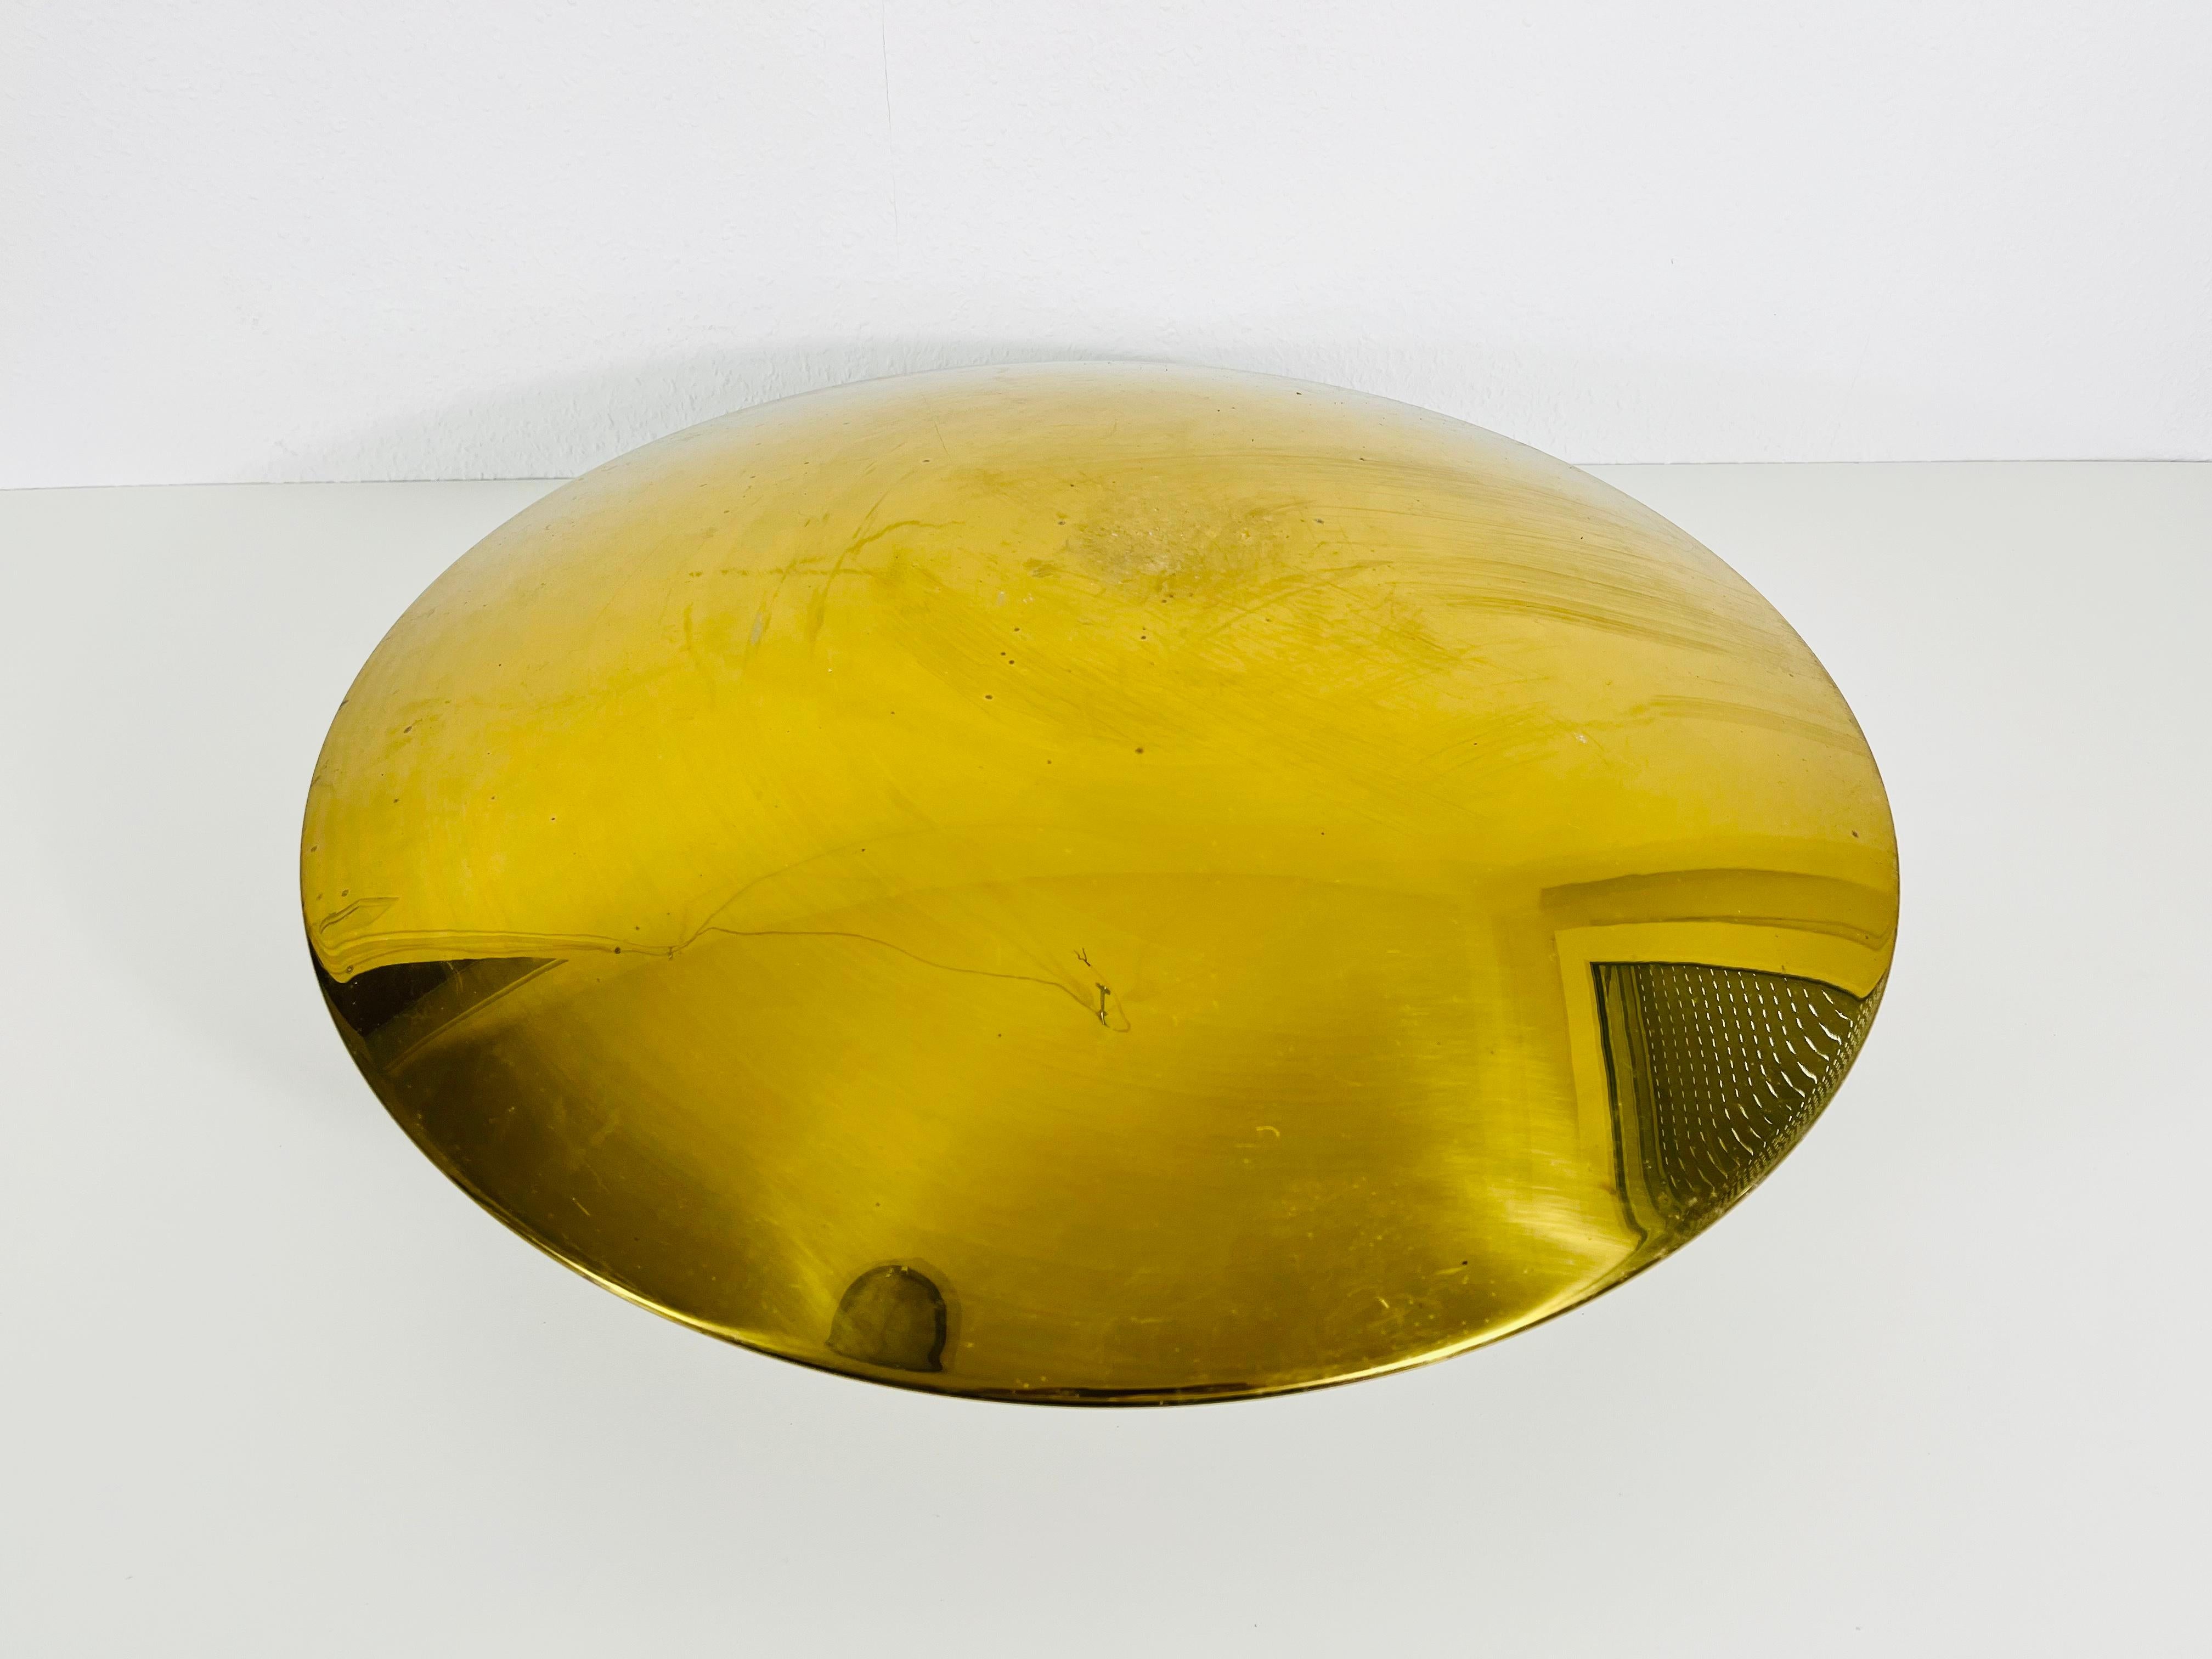 Un montage encastré du milieu du siècle par Florian Schulz, fabriqué en Allemagne dans les années 1960. Il est fascinant avec son abat-jour rond en laiton doré. 

Mesures :

Hauteur 20 cm

Diamètre 54 cm

Le luminaire nécessite cinq ampoules